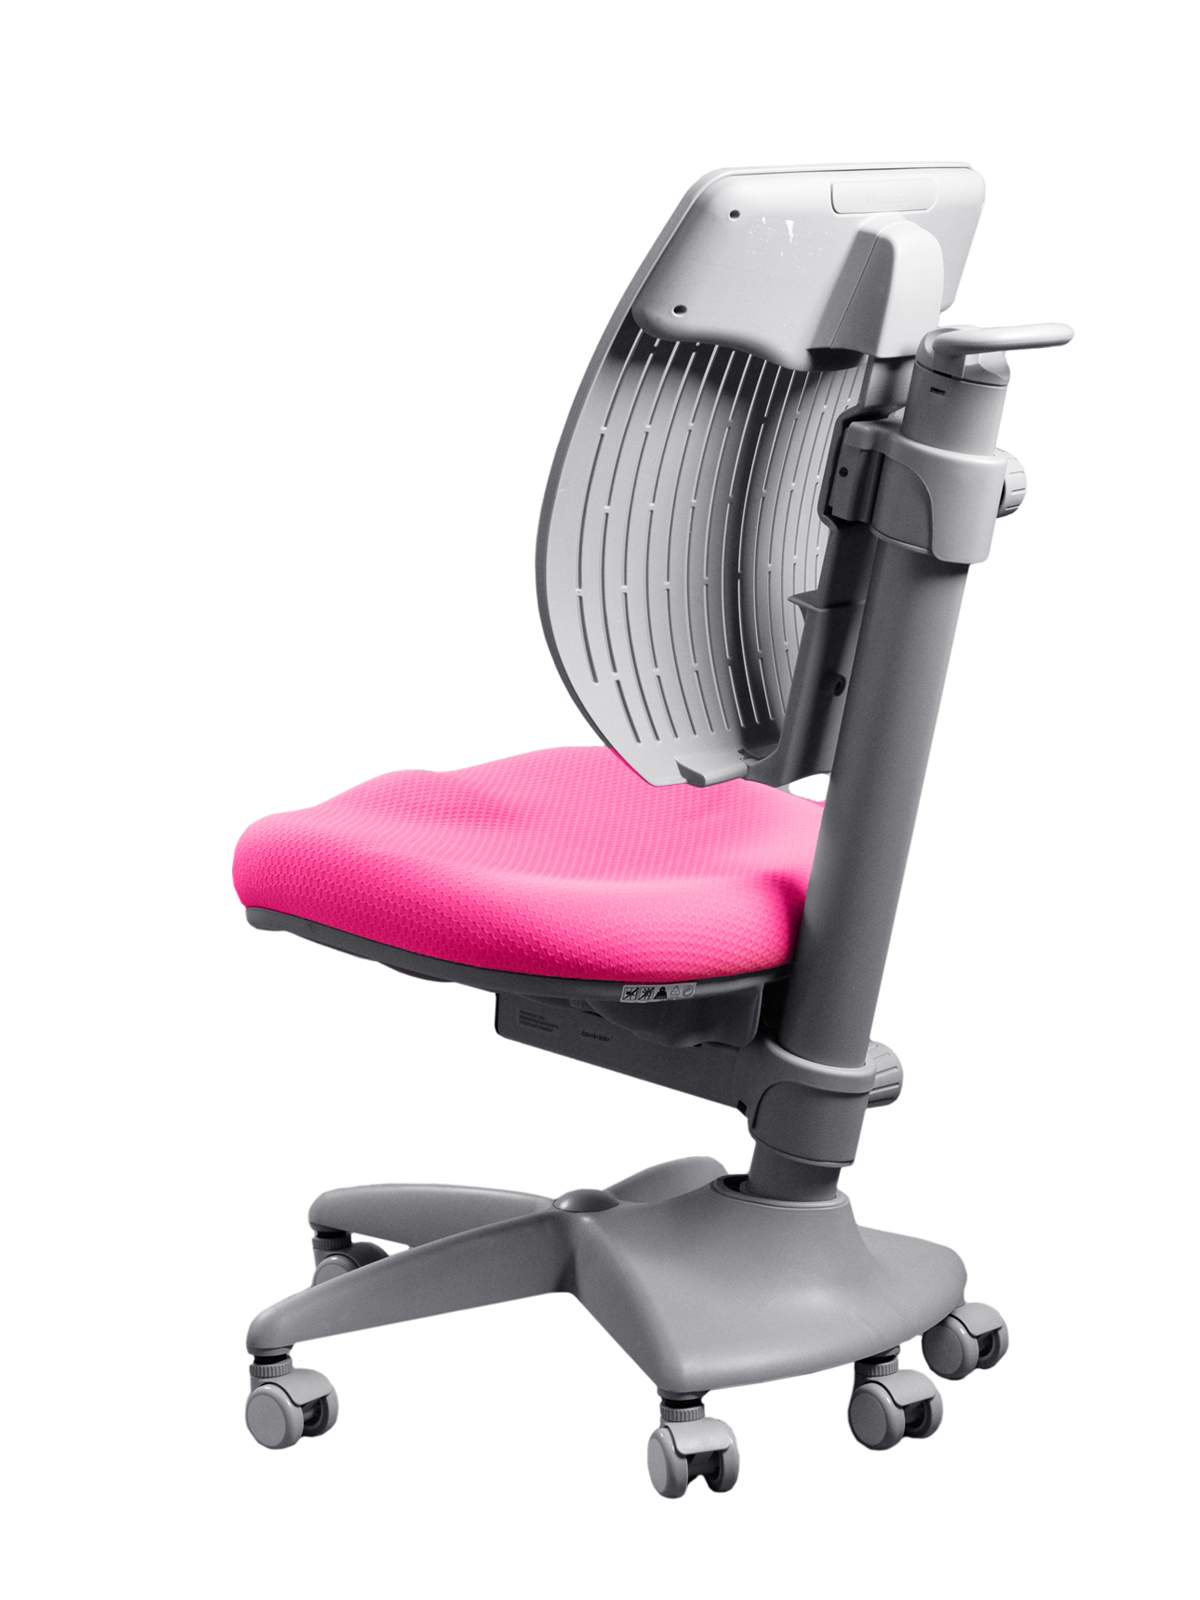 Купить детское кресло Comf-Pro Speed Ultra Розовое, цены на Мегамаркет